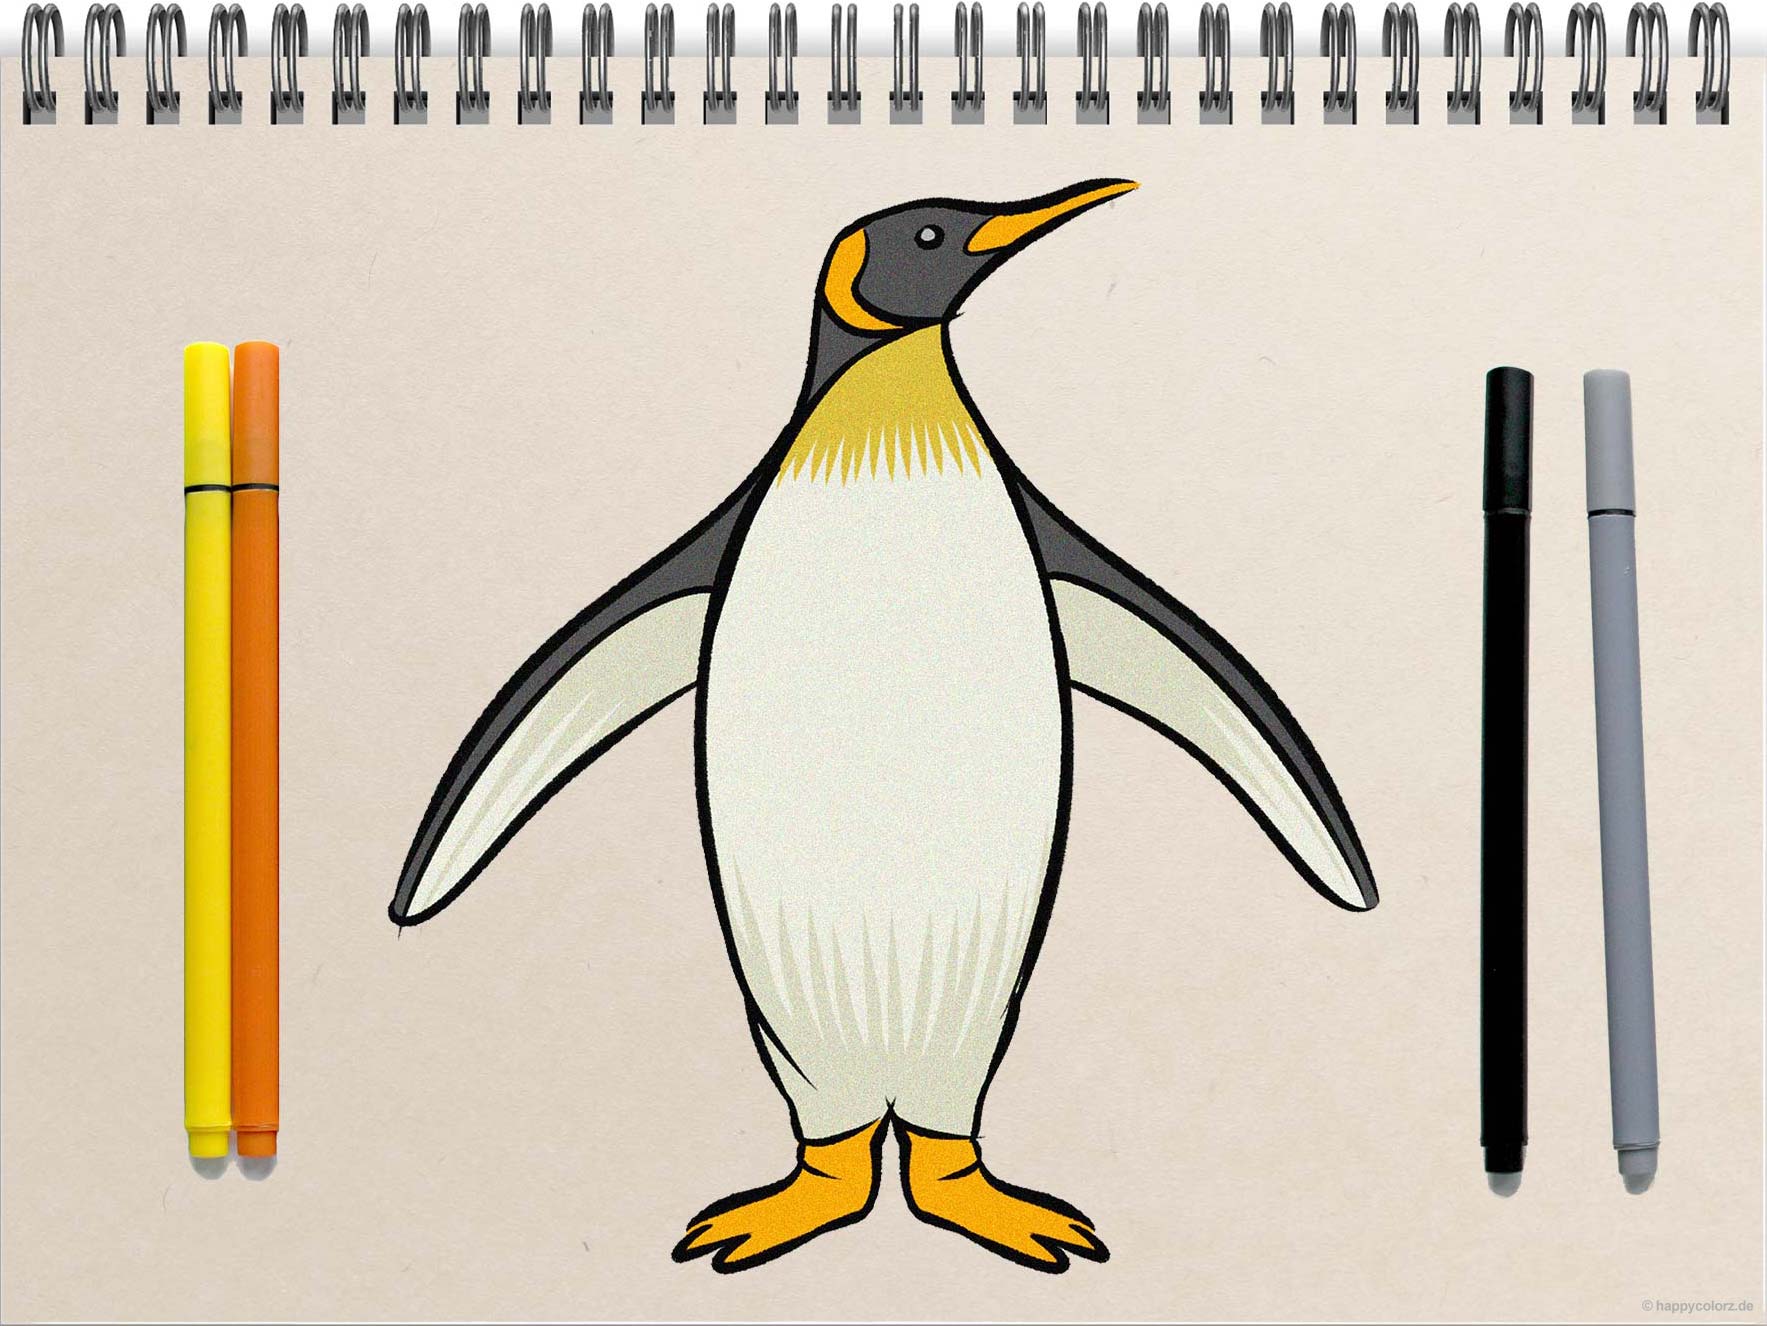 Pinguin zeichnen - Schritt-für-Schritt Anleitung mit Vorlagen